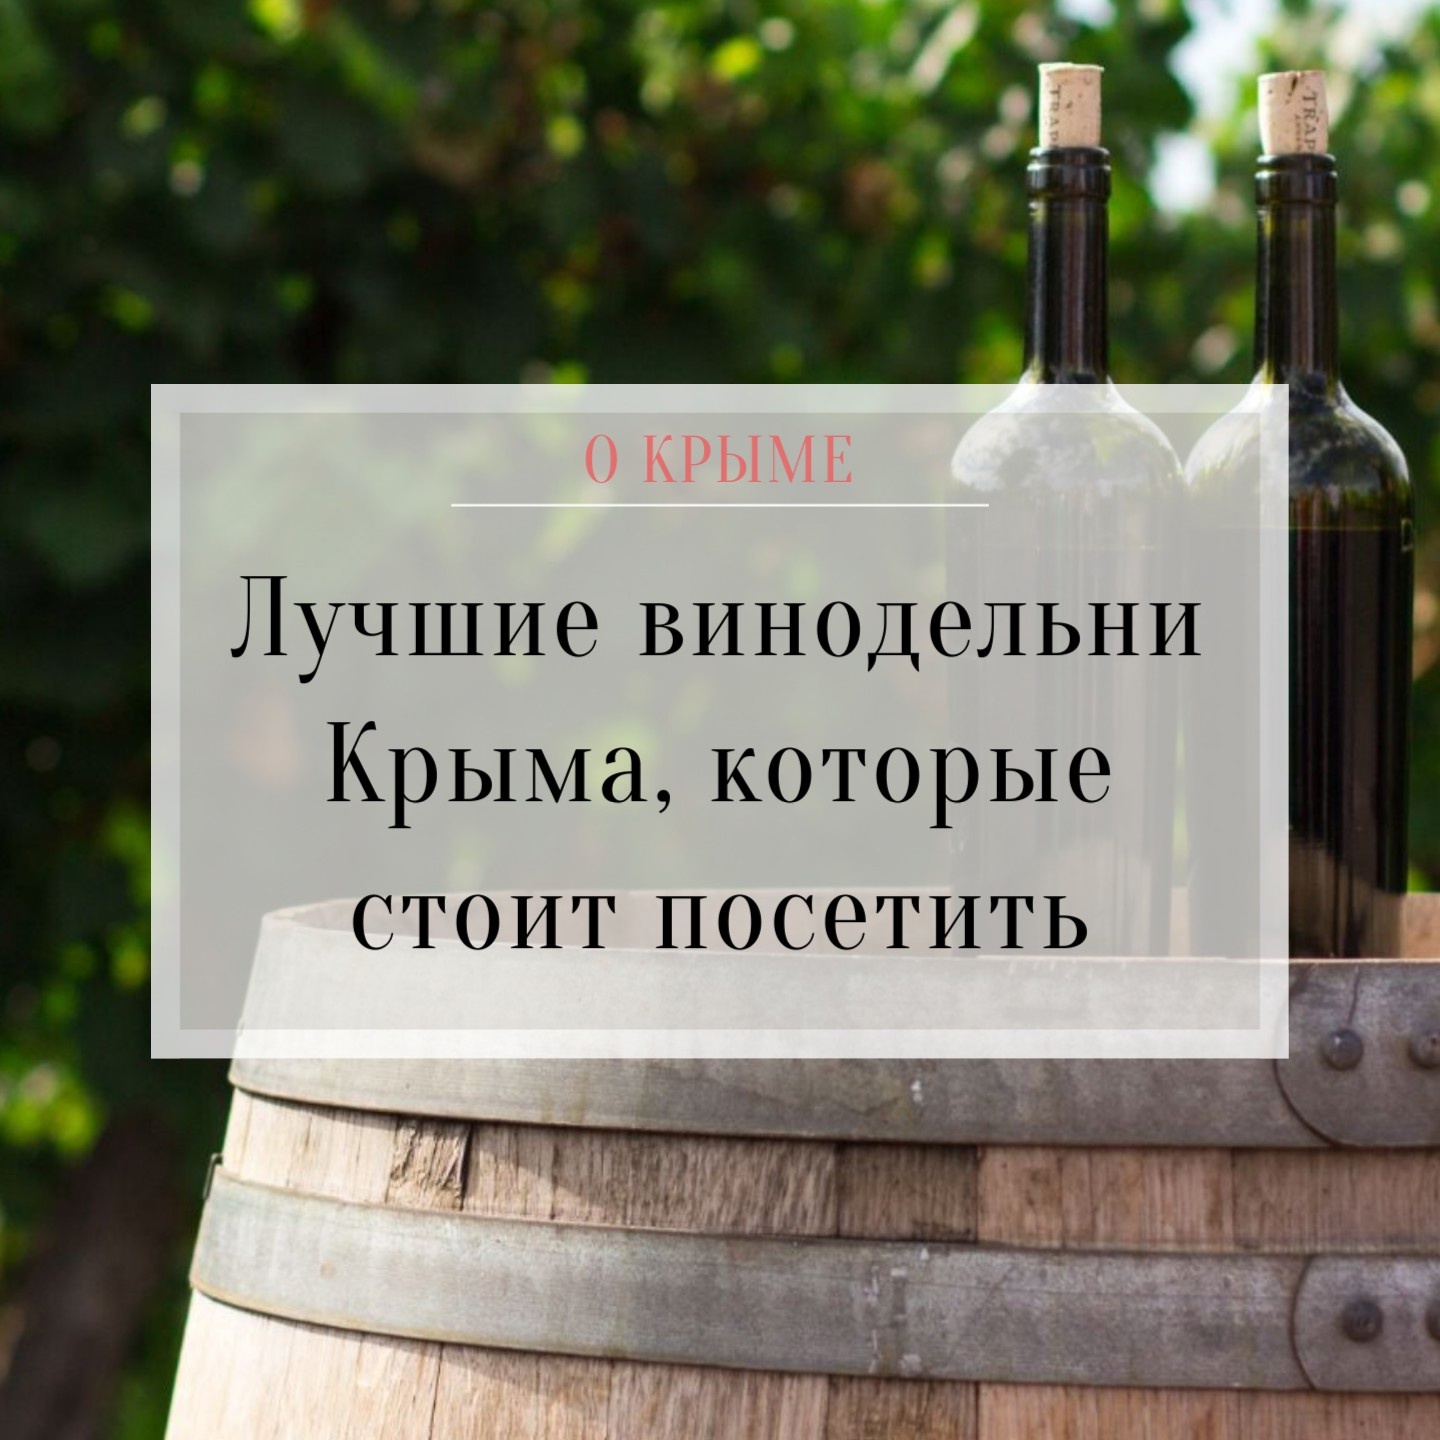 Крымские винодельни